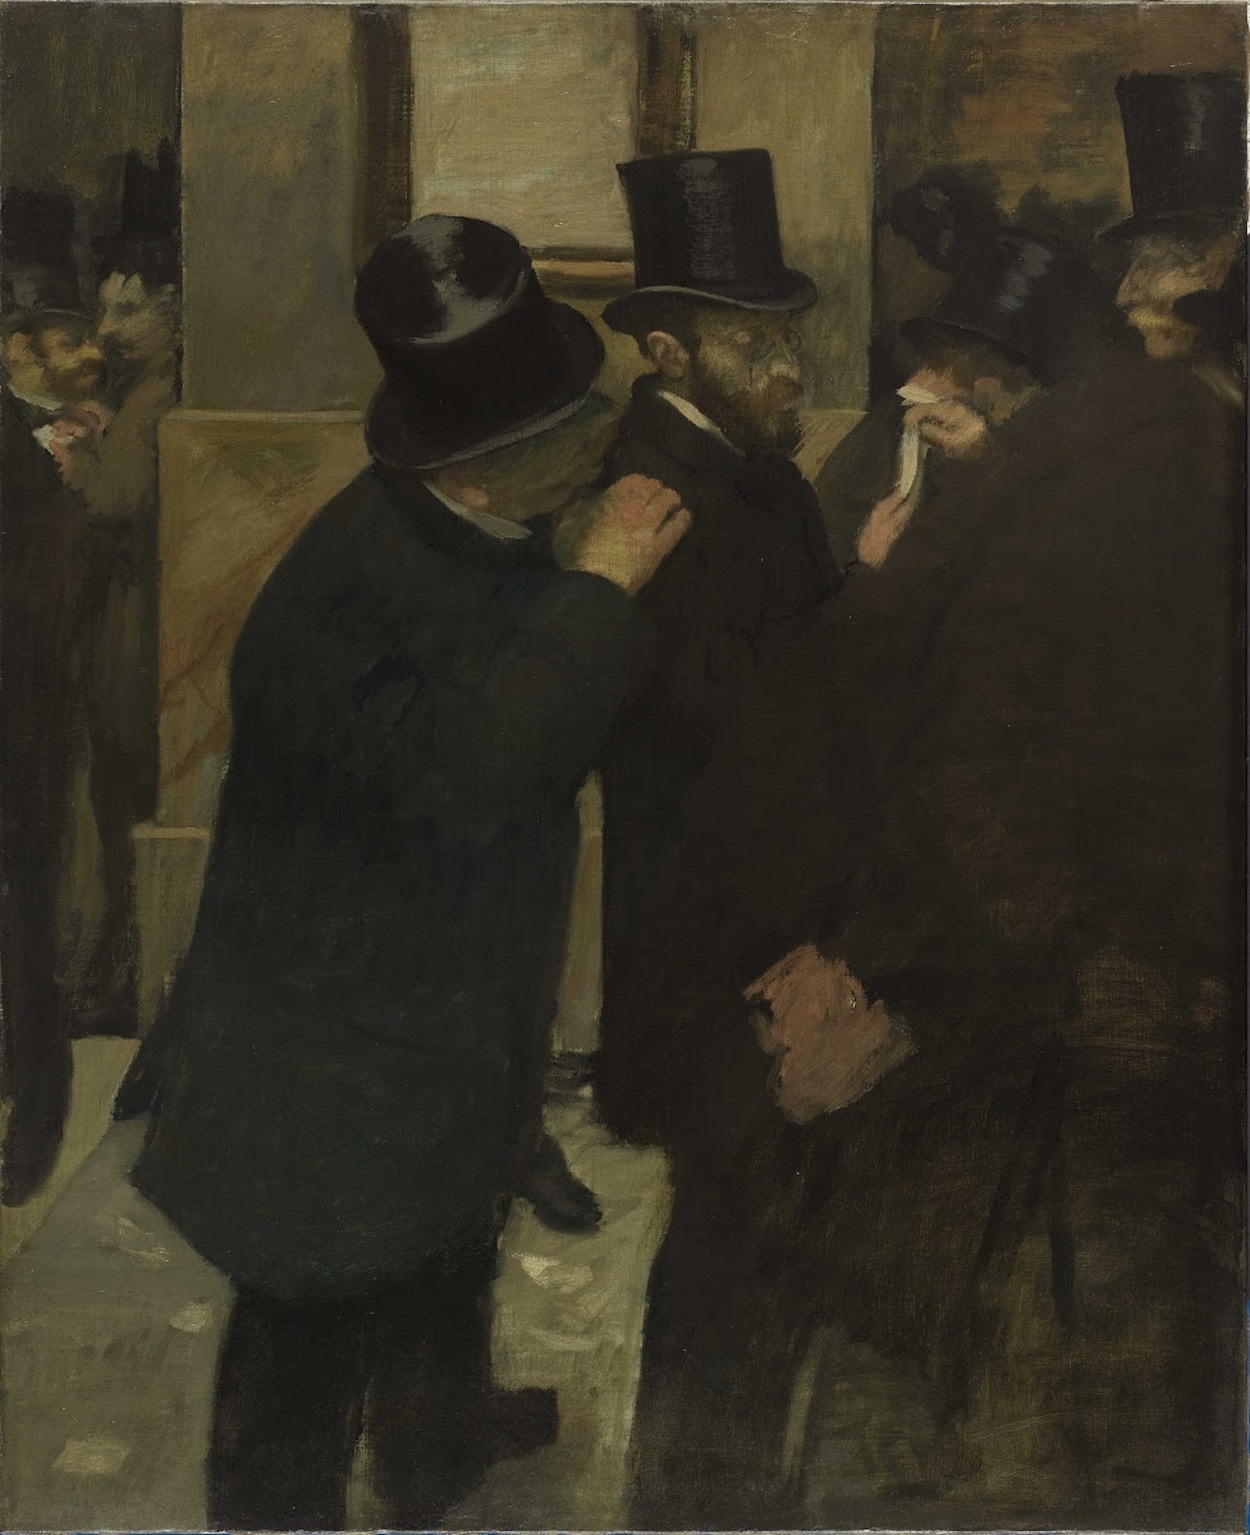 Retratos en la bolsa de valores by Edgar Degas - 1879 Musée d'Orsay